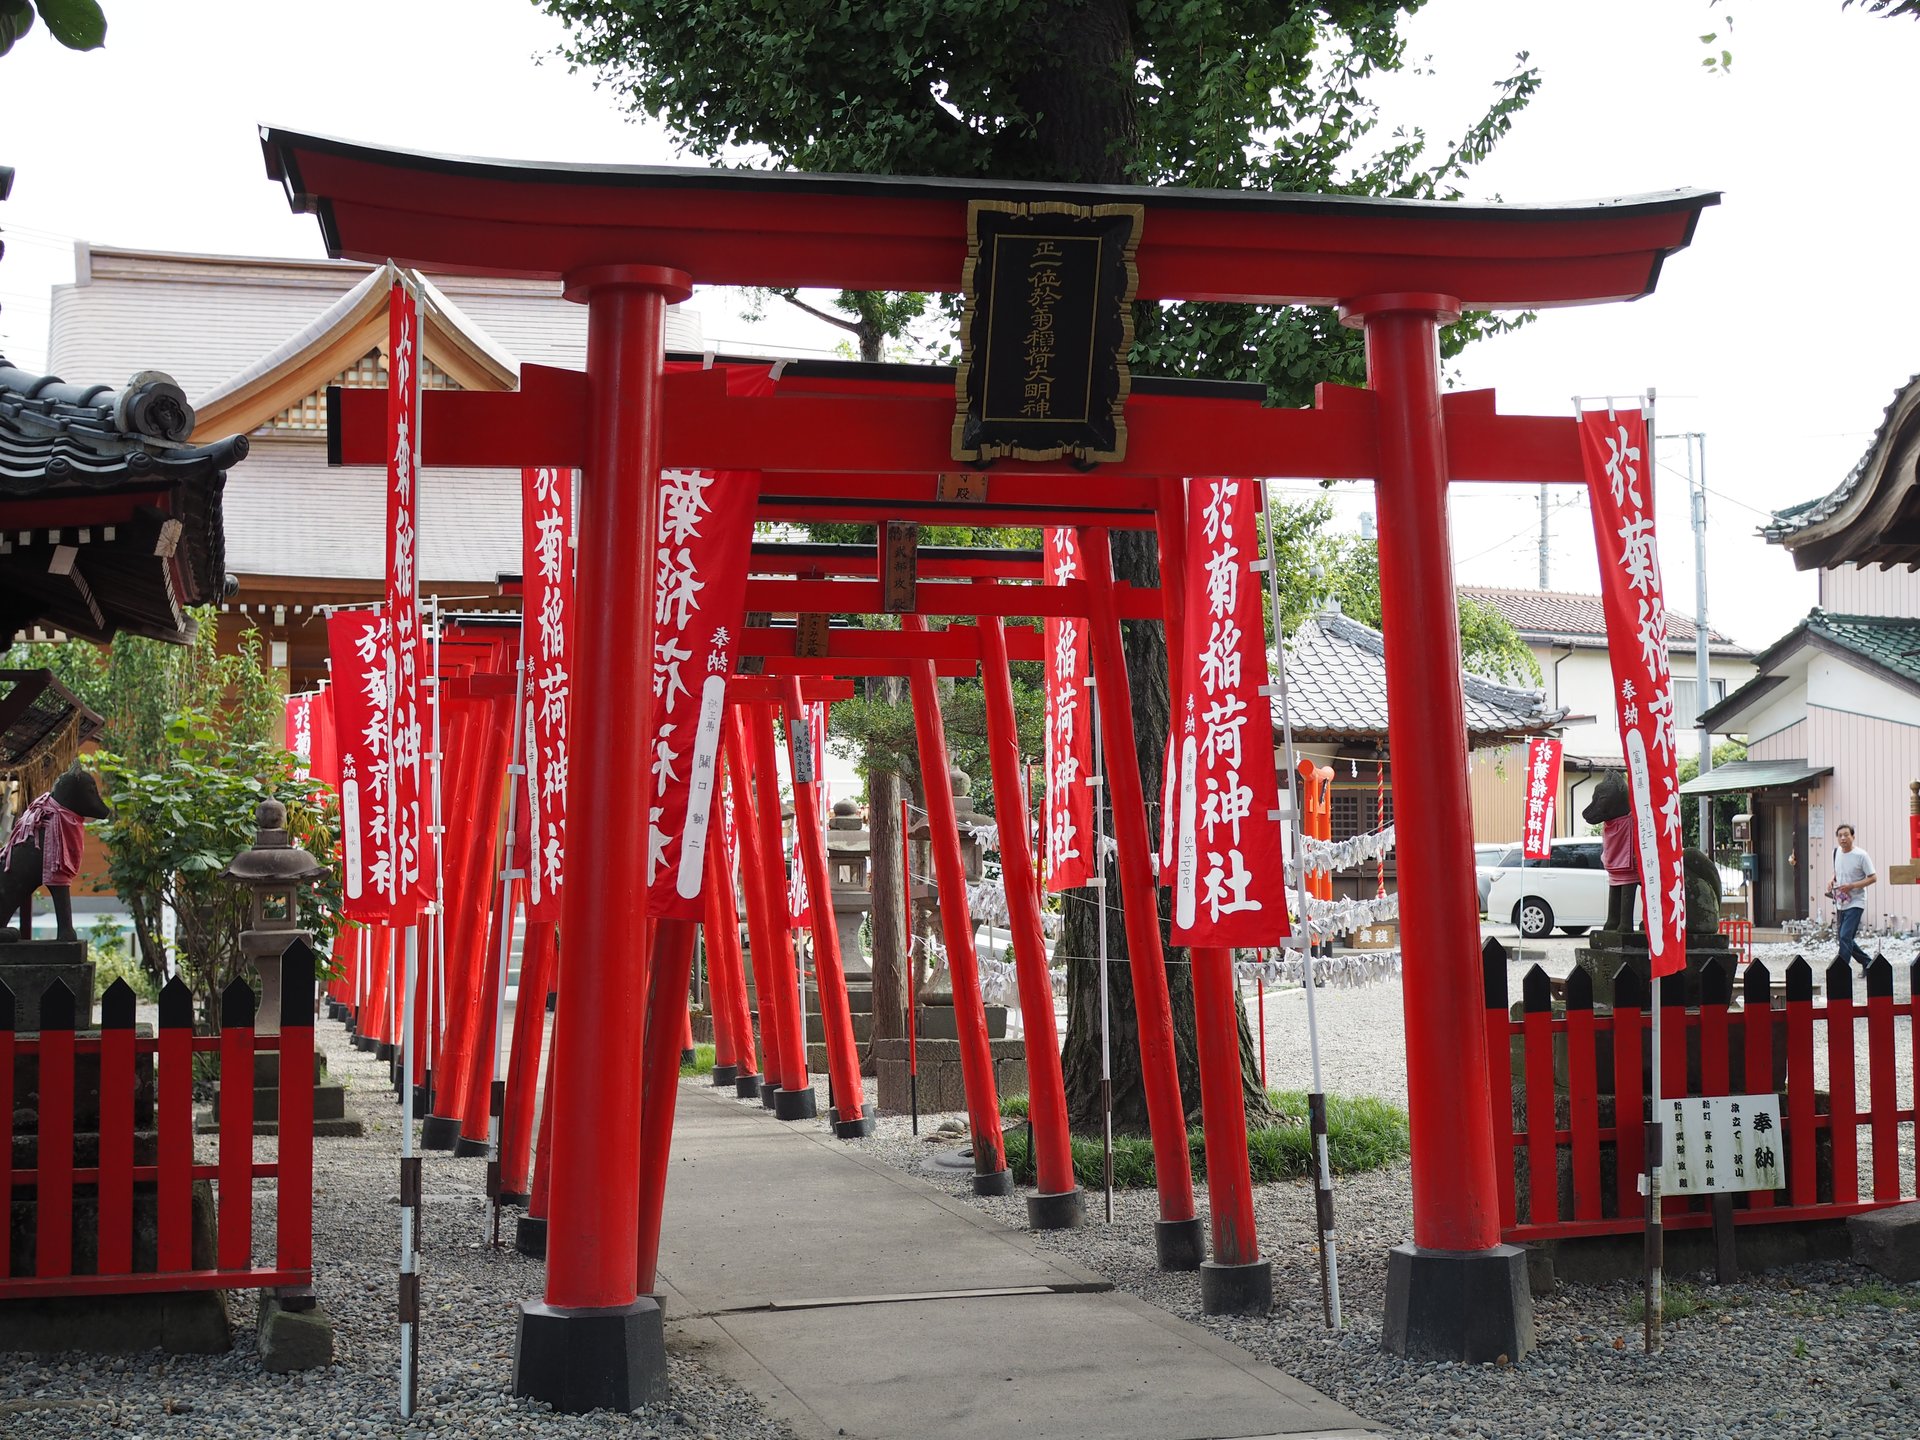 【群馬旅】アートな限定御朱印で大人気の神社♡高崎にある「於菊稲荷神社」にお詣りしてみた♪